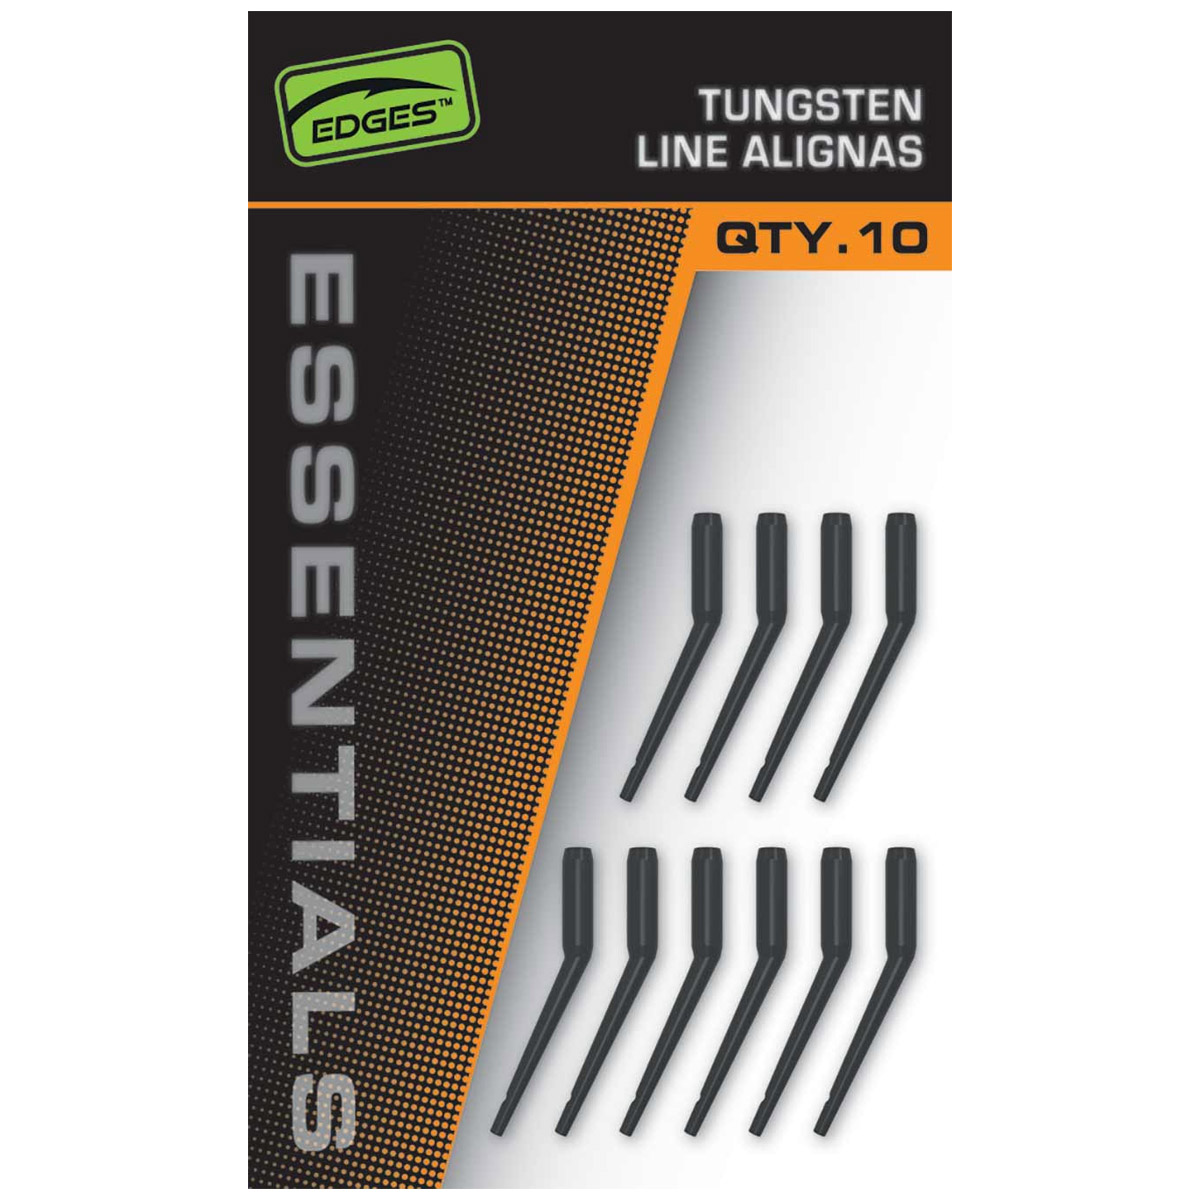 Fox Edges™ Essentials Tungsten Line Alignas